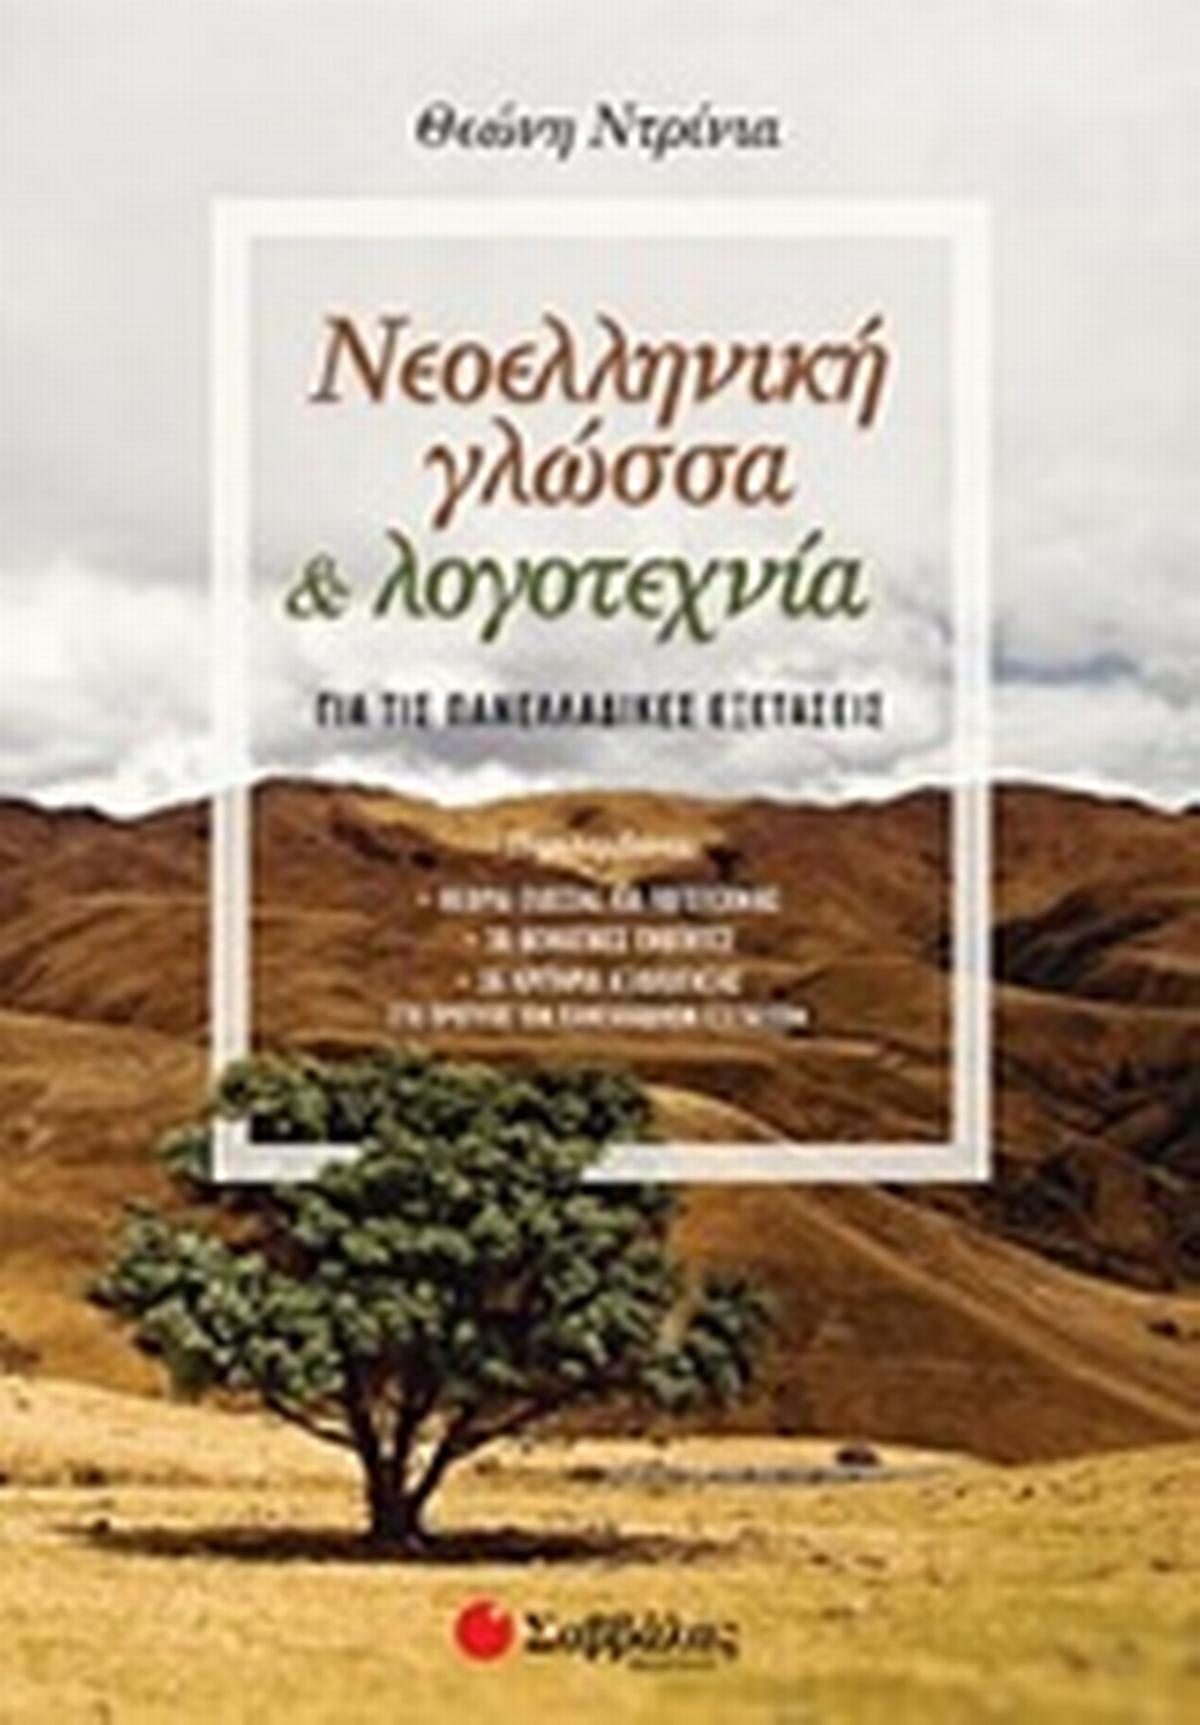 Νεοελληνική γλώσσα & λογοτεχνία για τις πανελλαδικές εξετάσεις